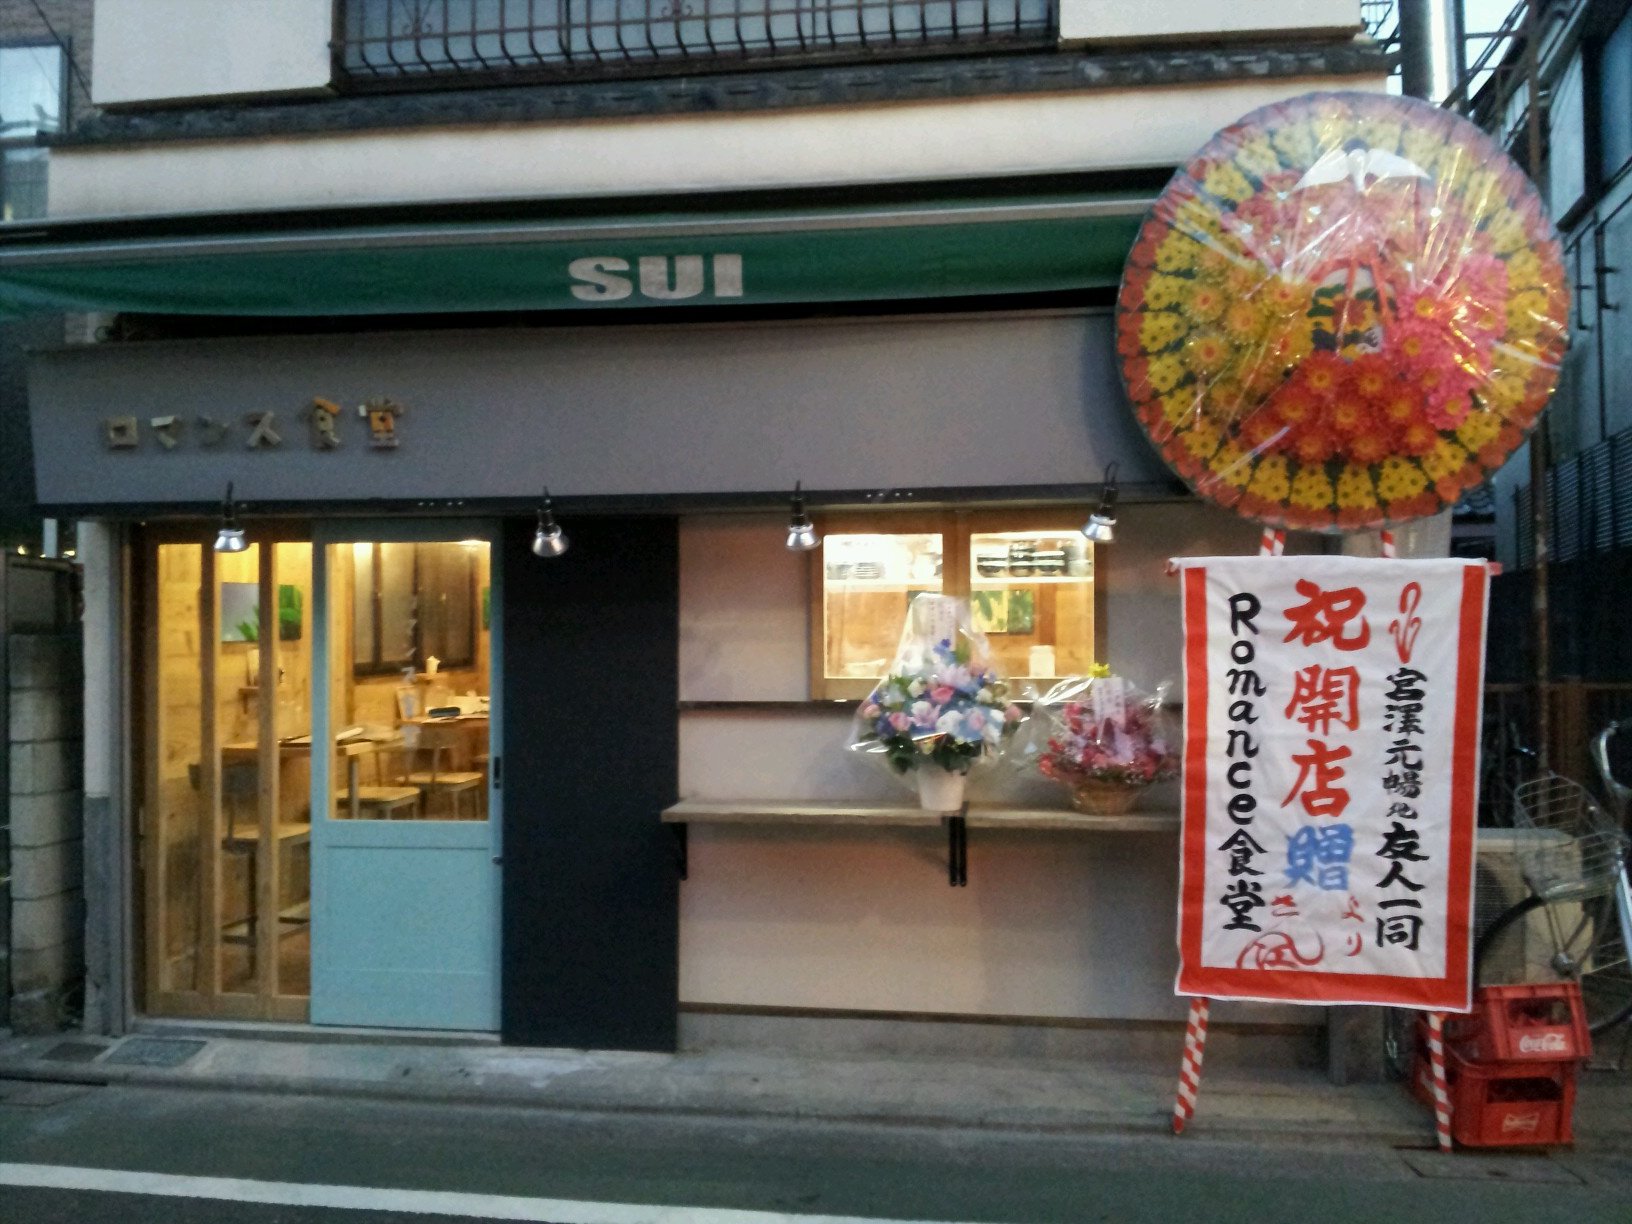 江古田で夜定食やってます。ごはん、お惣菜お代わり無料です。やさしい味ご用意しておまちしております。